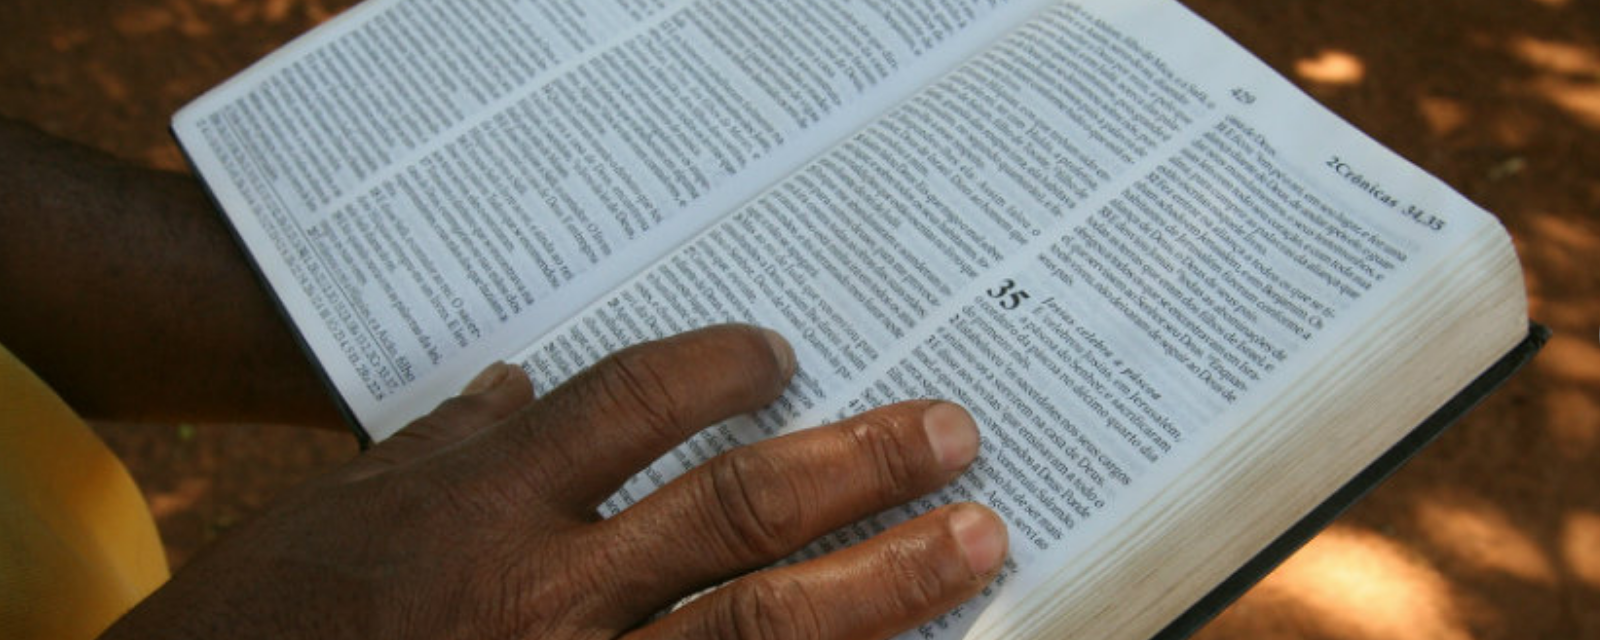 Mão em uma bíblia, simbolizando a reflexão bíblica Buscando as raízes do Deuteronômio.